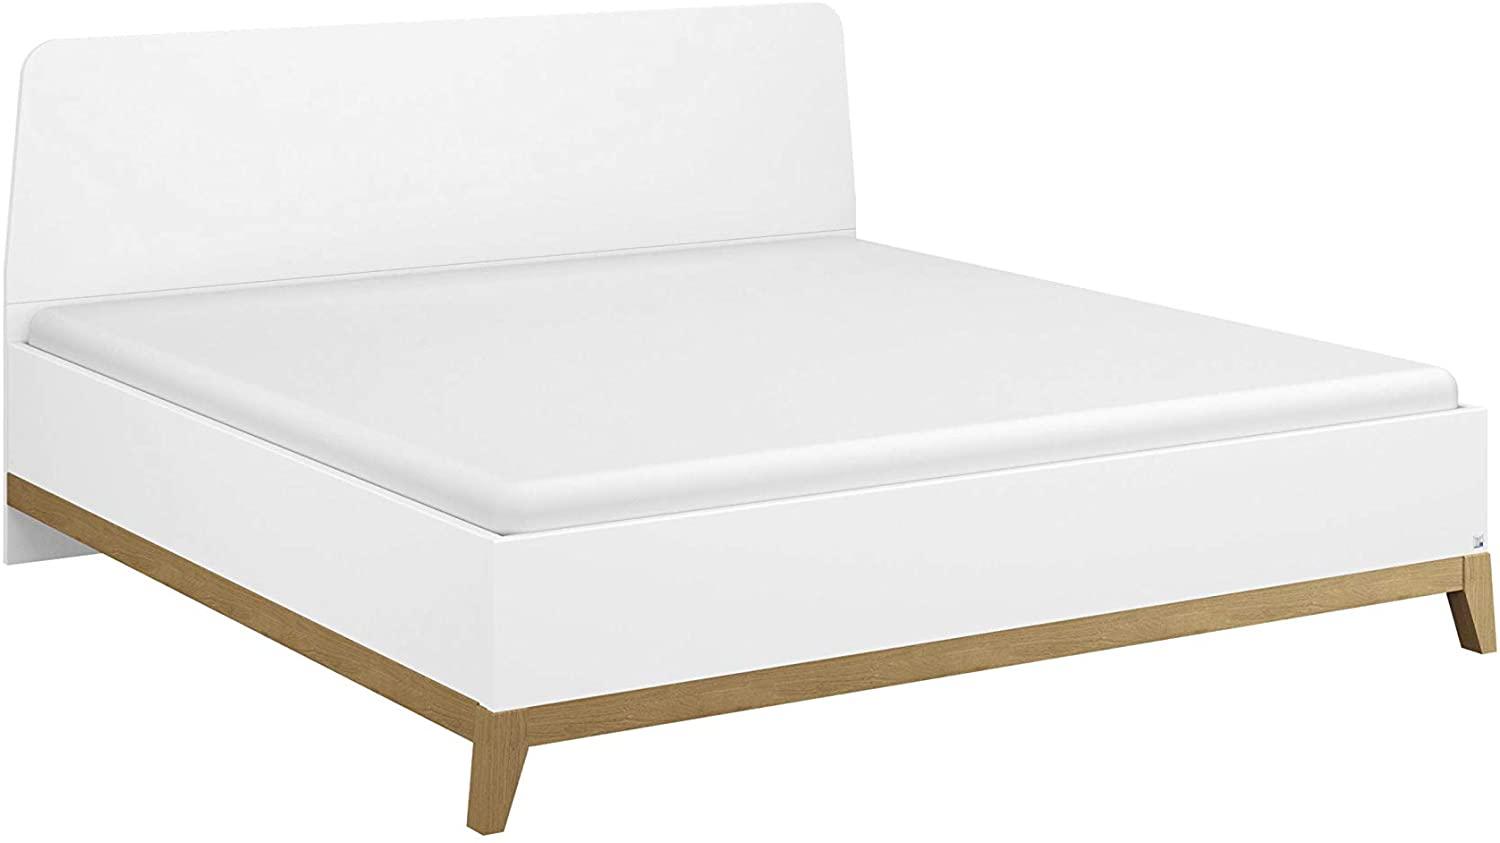 Rauch Möbel Carlsson Bett Doppelbett Futonbett in weiß, Absetzungen/Füße Eiche massiv, Liegefläche 160x200 cm, Gesamtmaße BxHxT 169x97x207 cm Bild 1